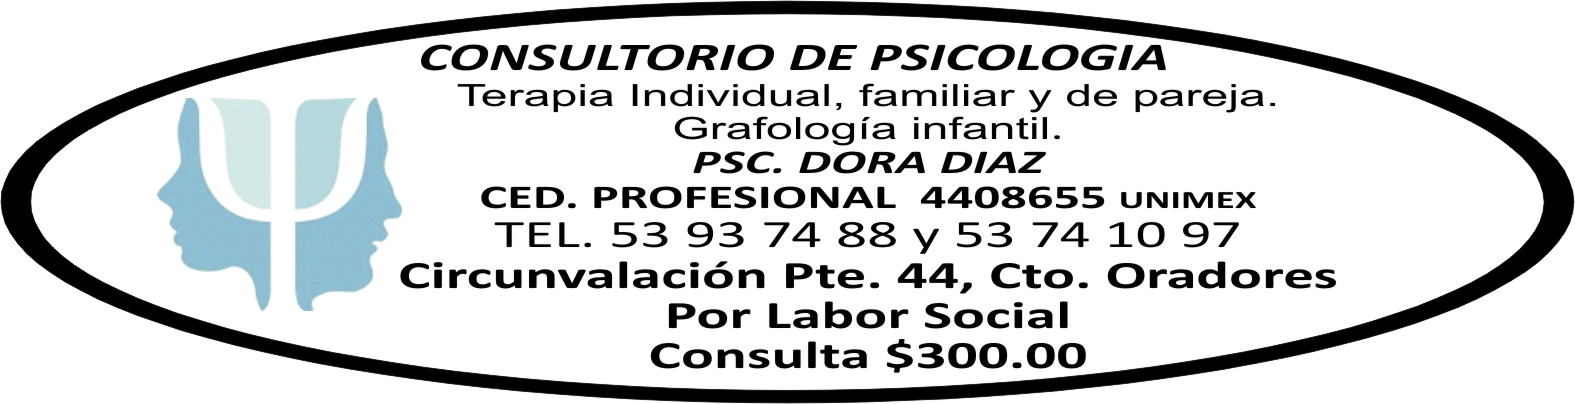 CONSULTORIO&NBSP;DE&NBSP;PSICOLOGIA $300 5393-7488
